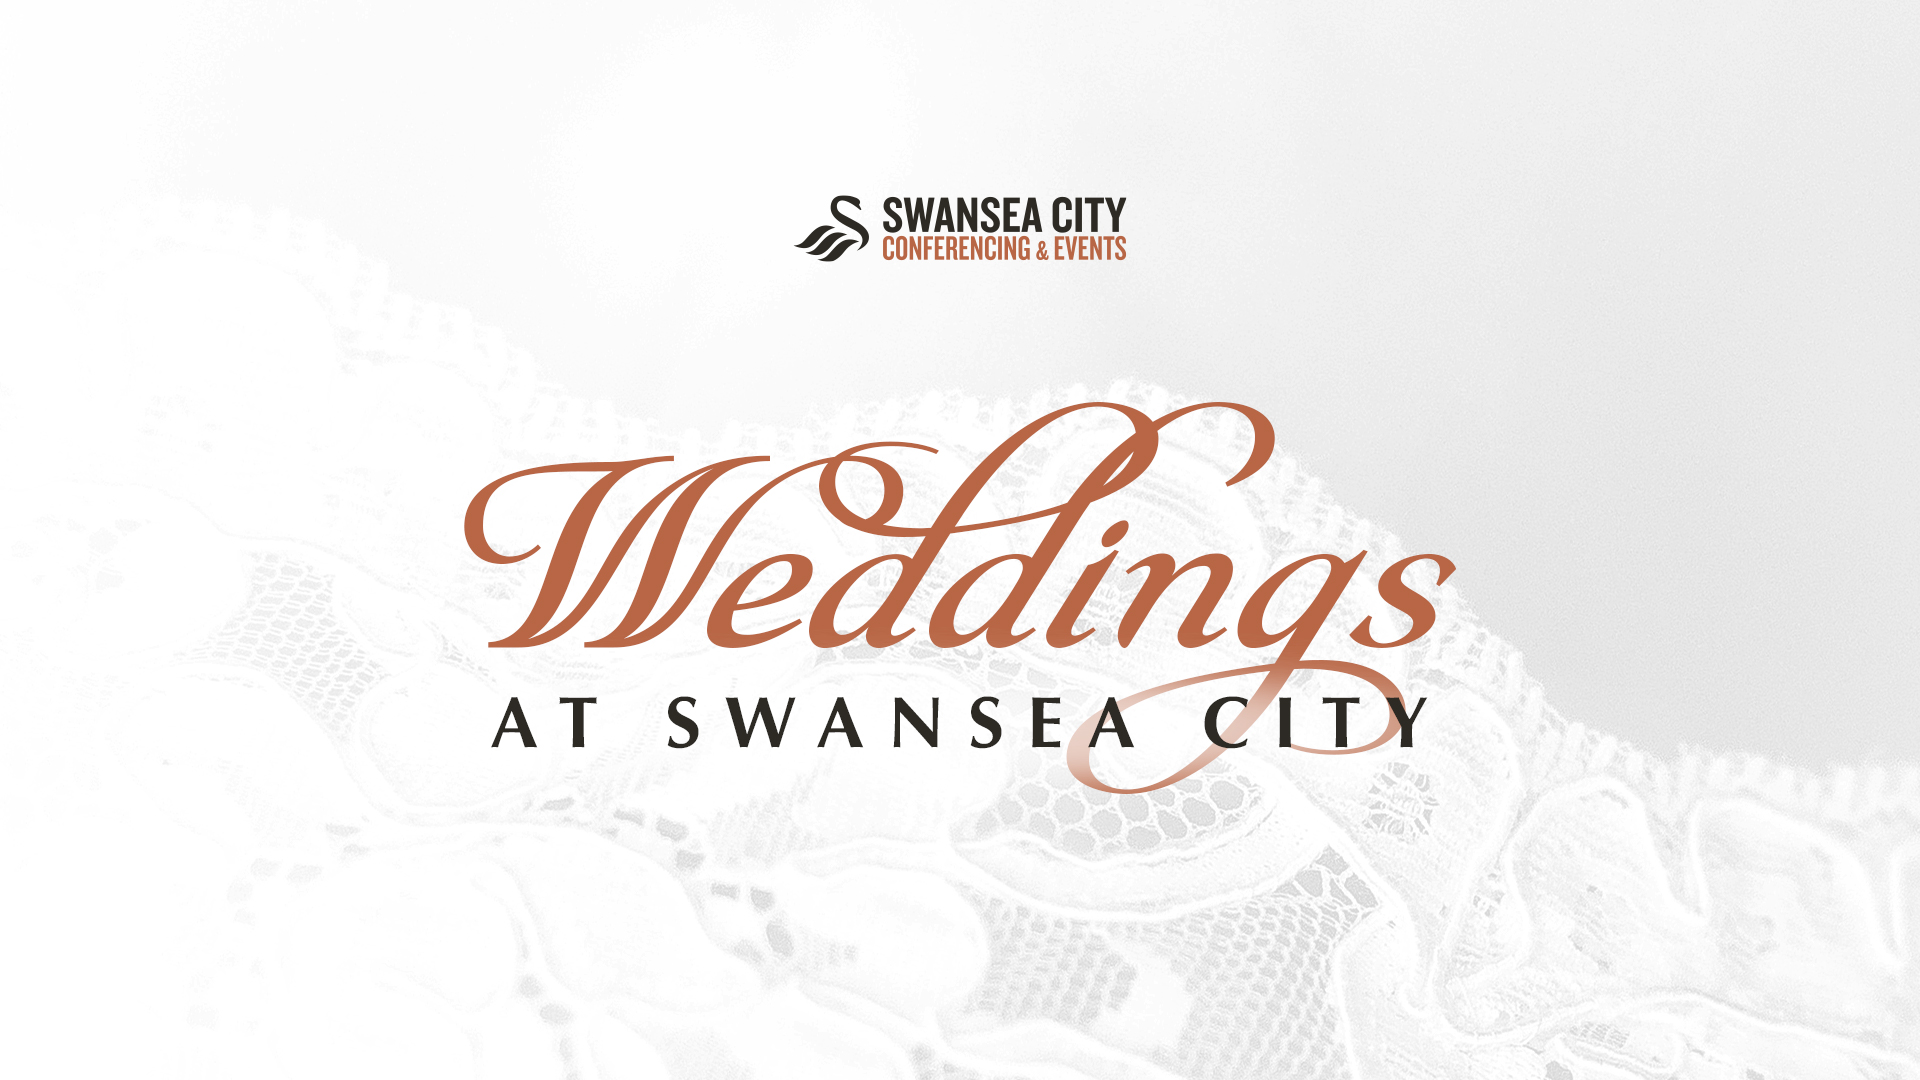 Swansea City weddings